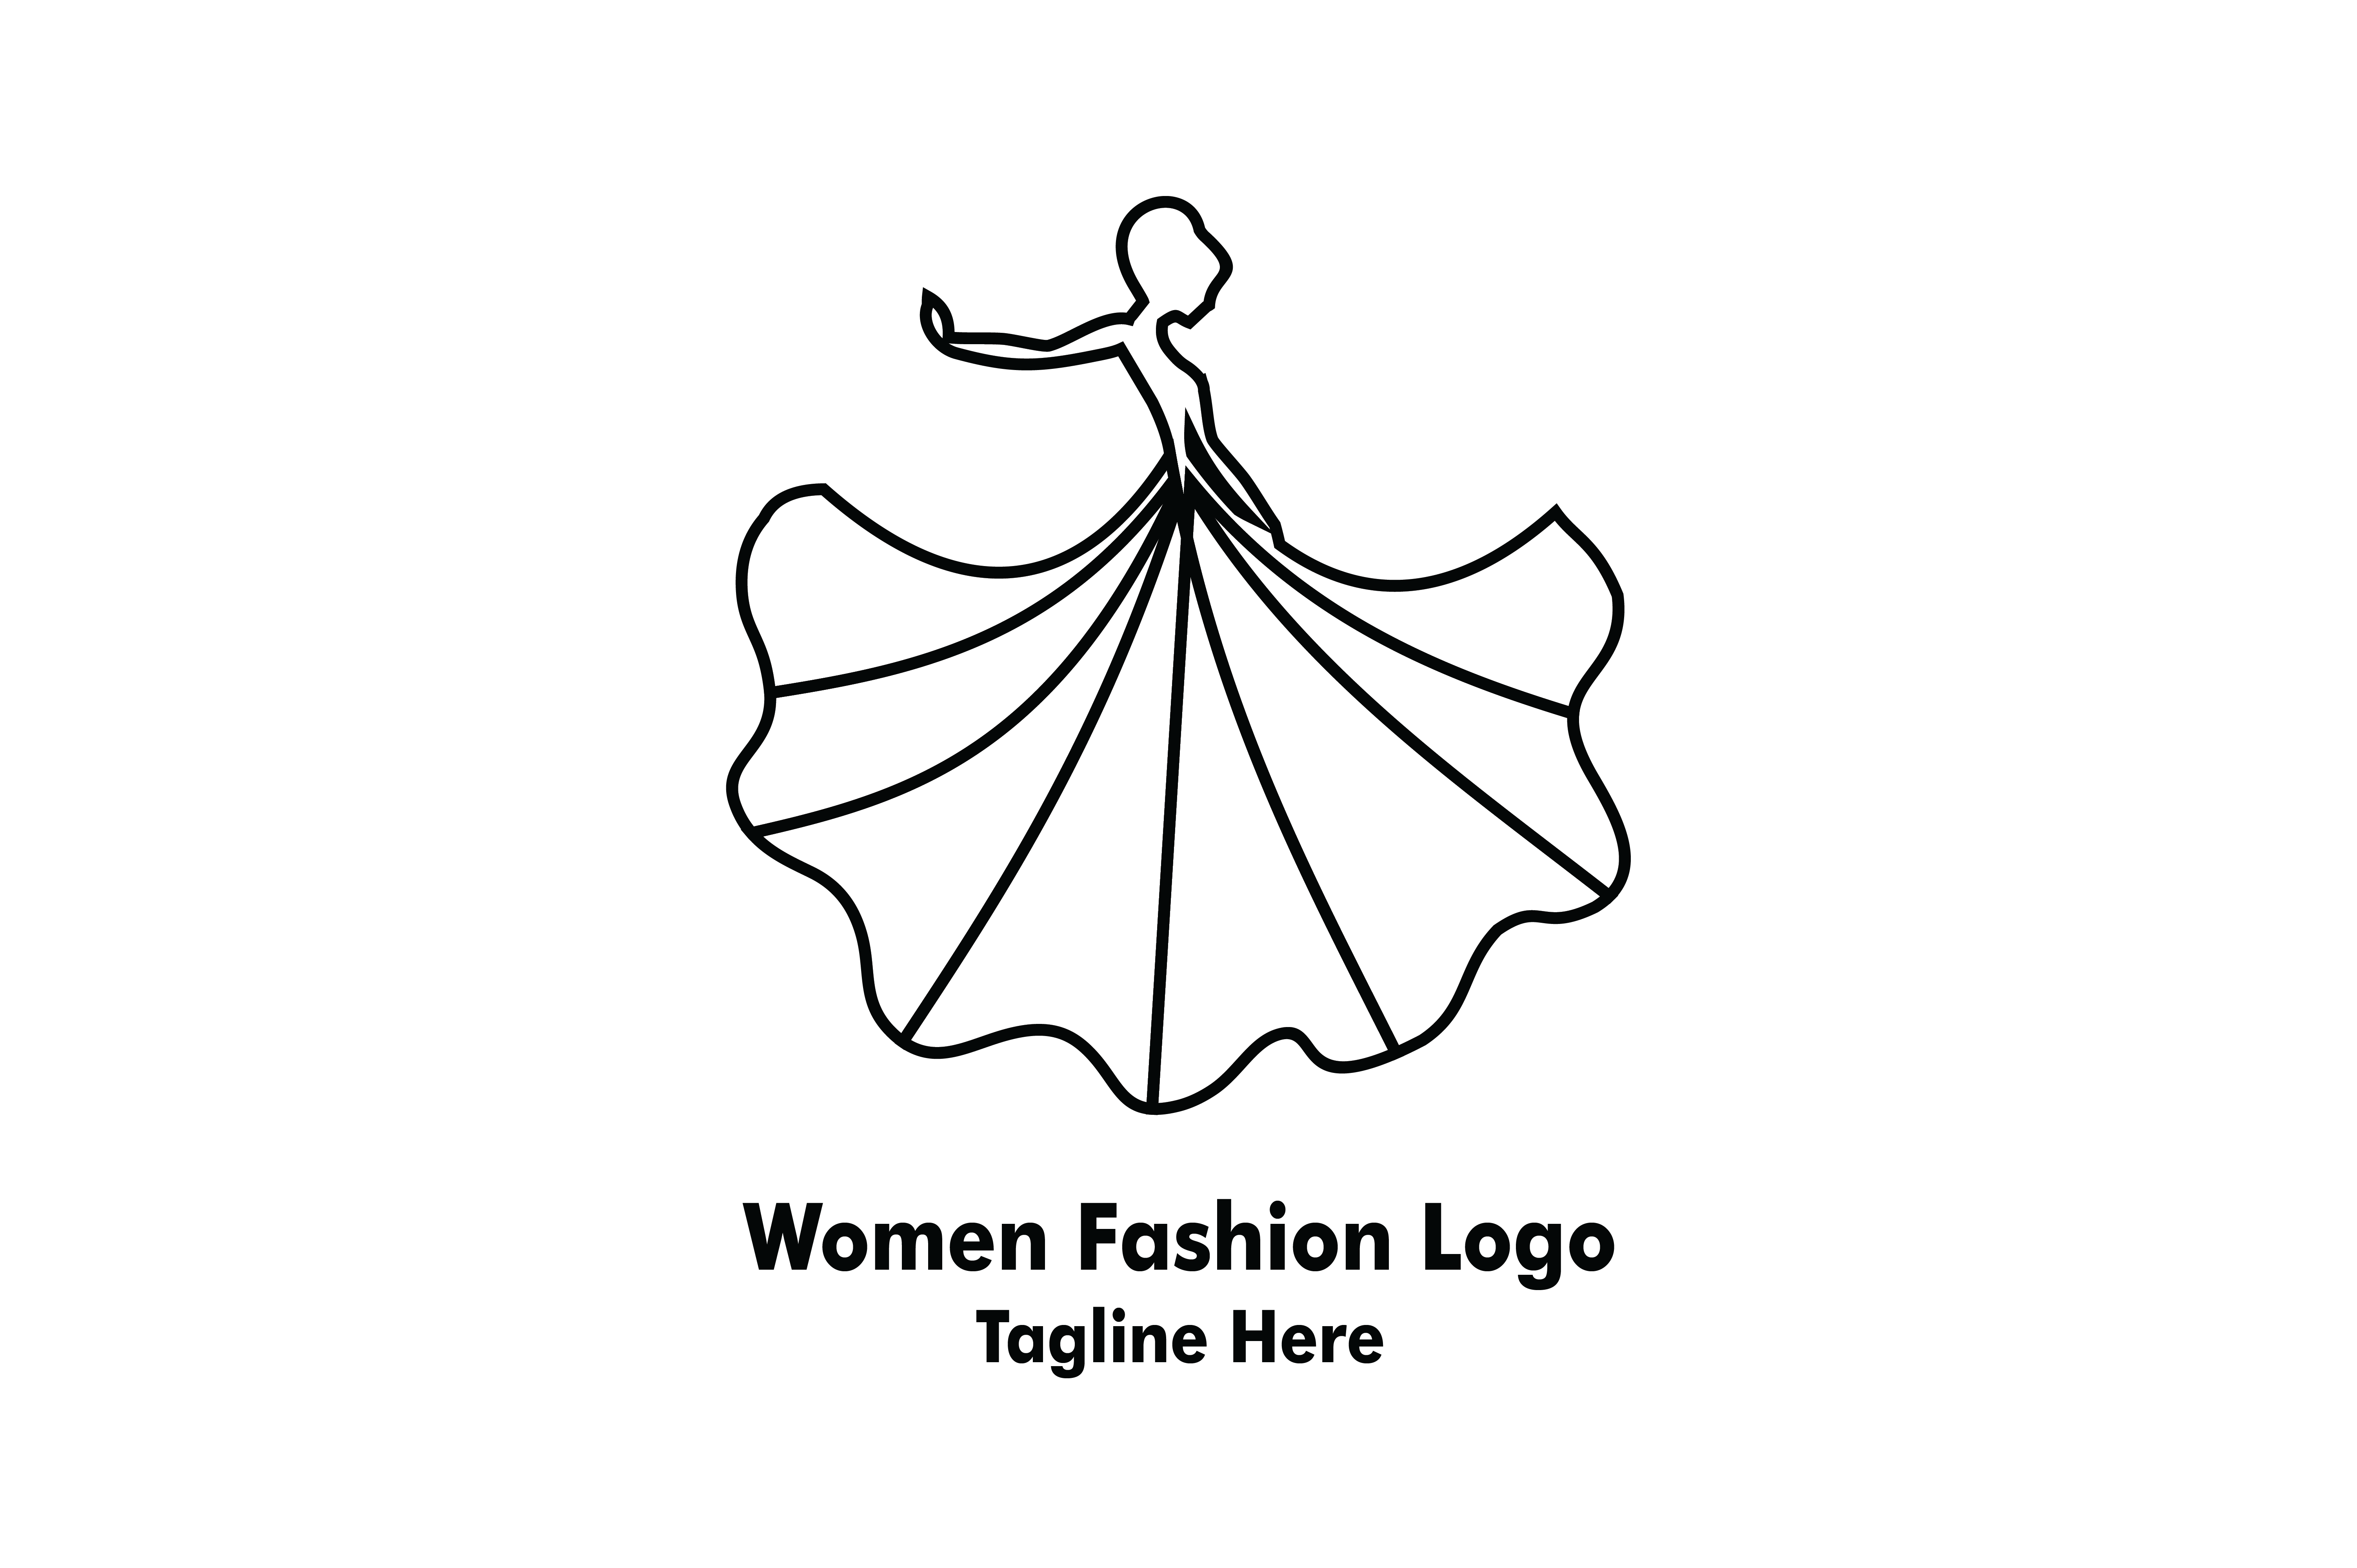 Women Beauty Fashion Logo Graphic by Yuhana Purwanti · Creative Fabrica